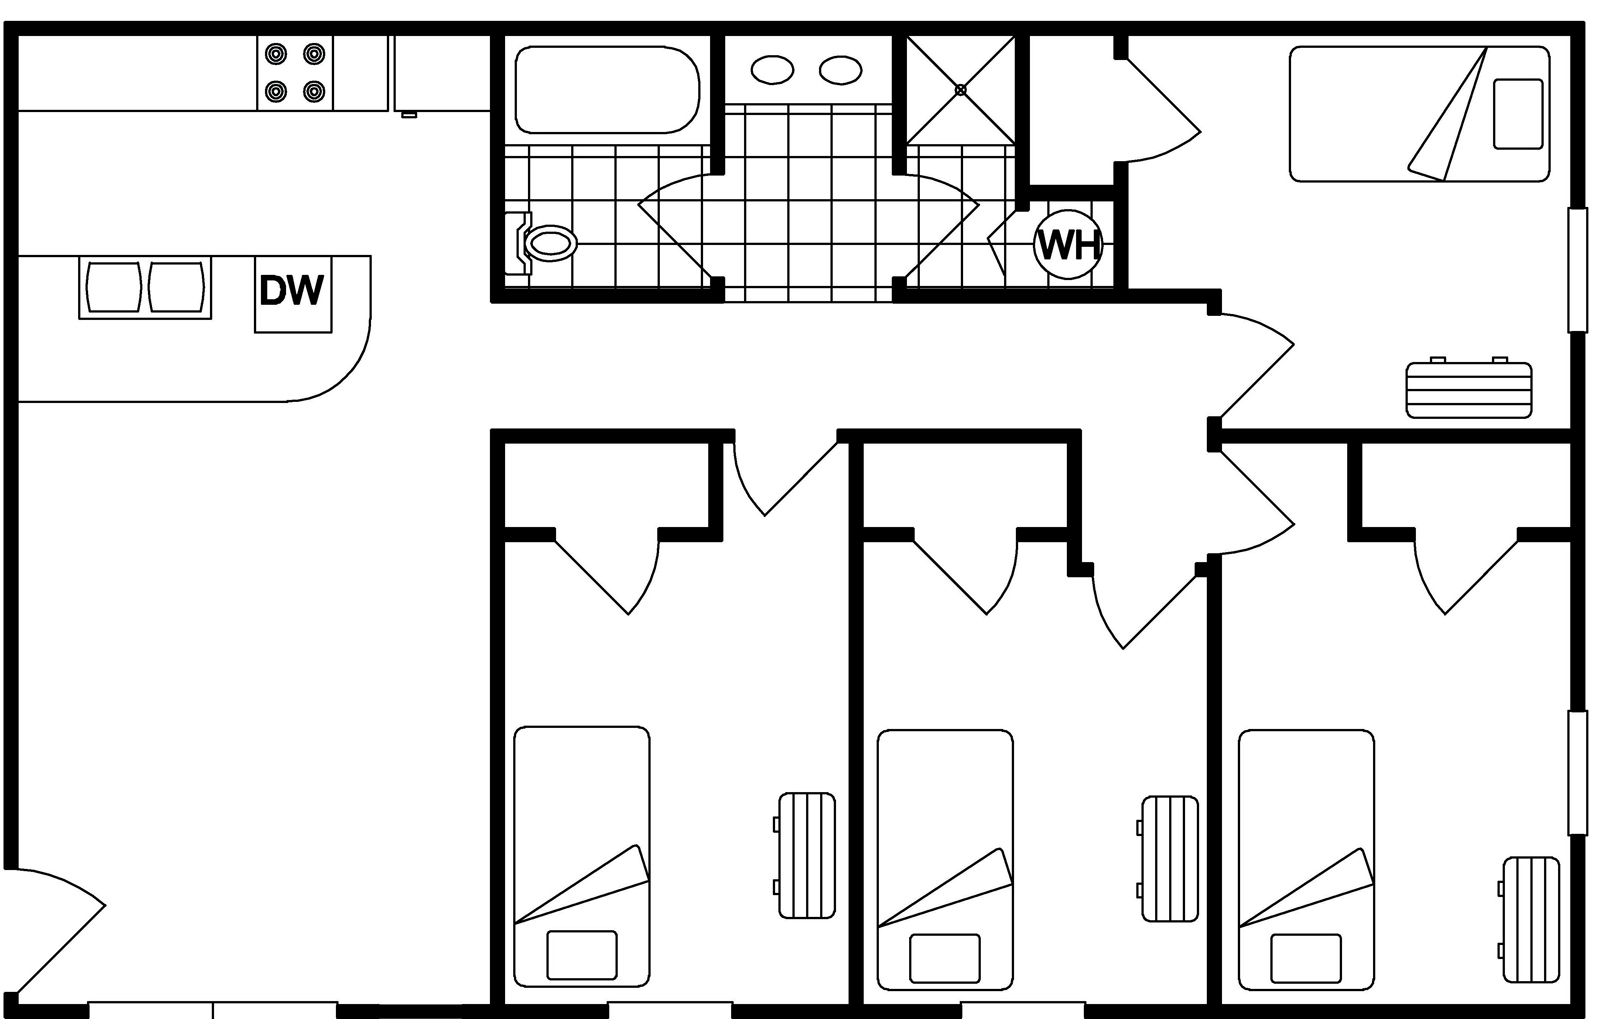 4 Bedroom Floor Plan Example A Illustration